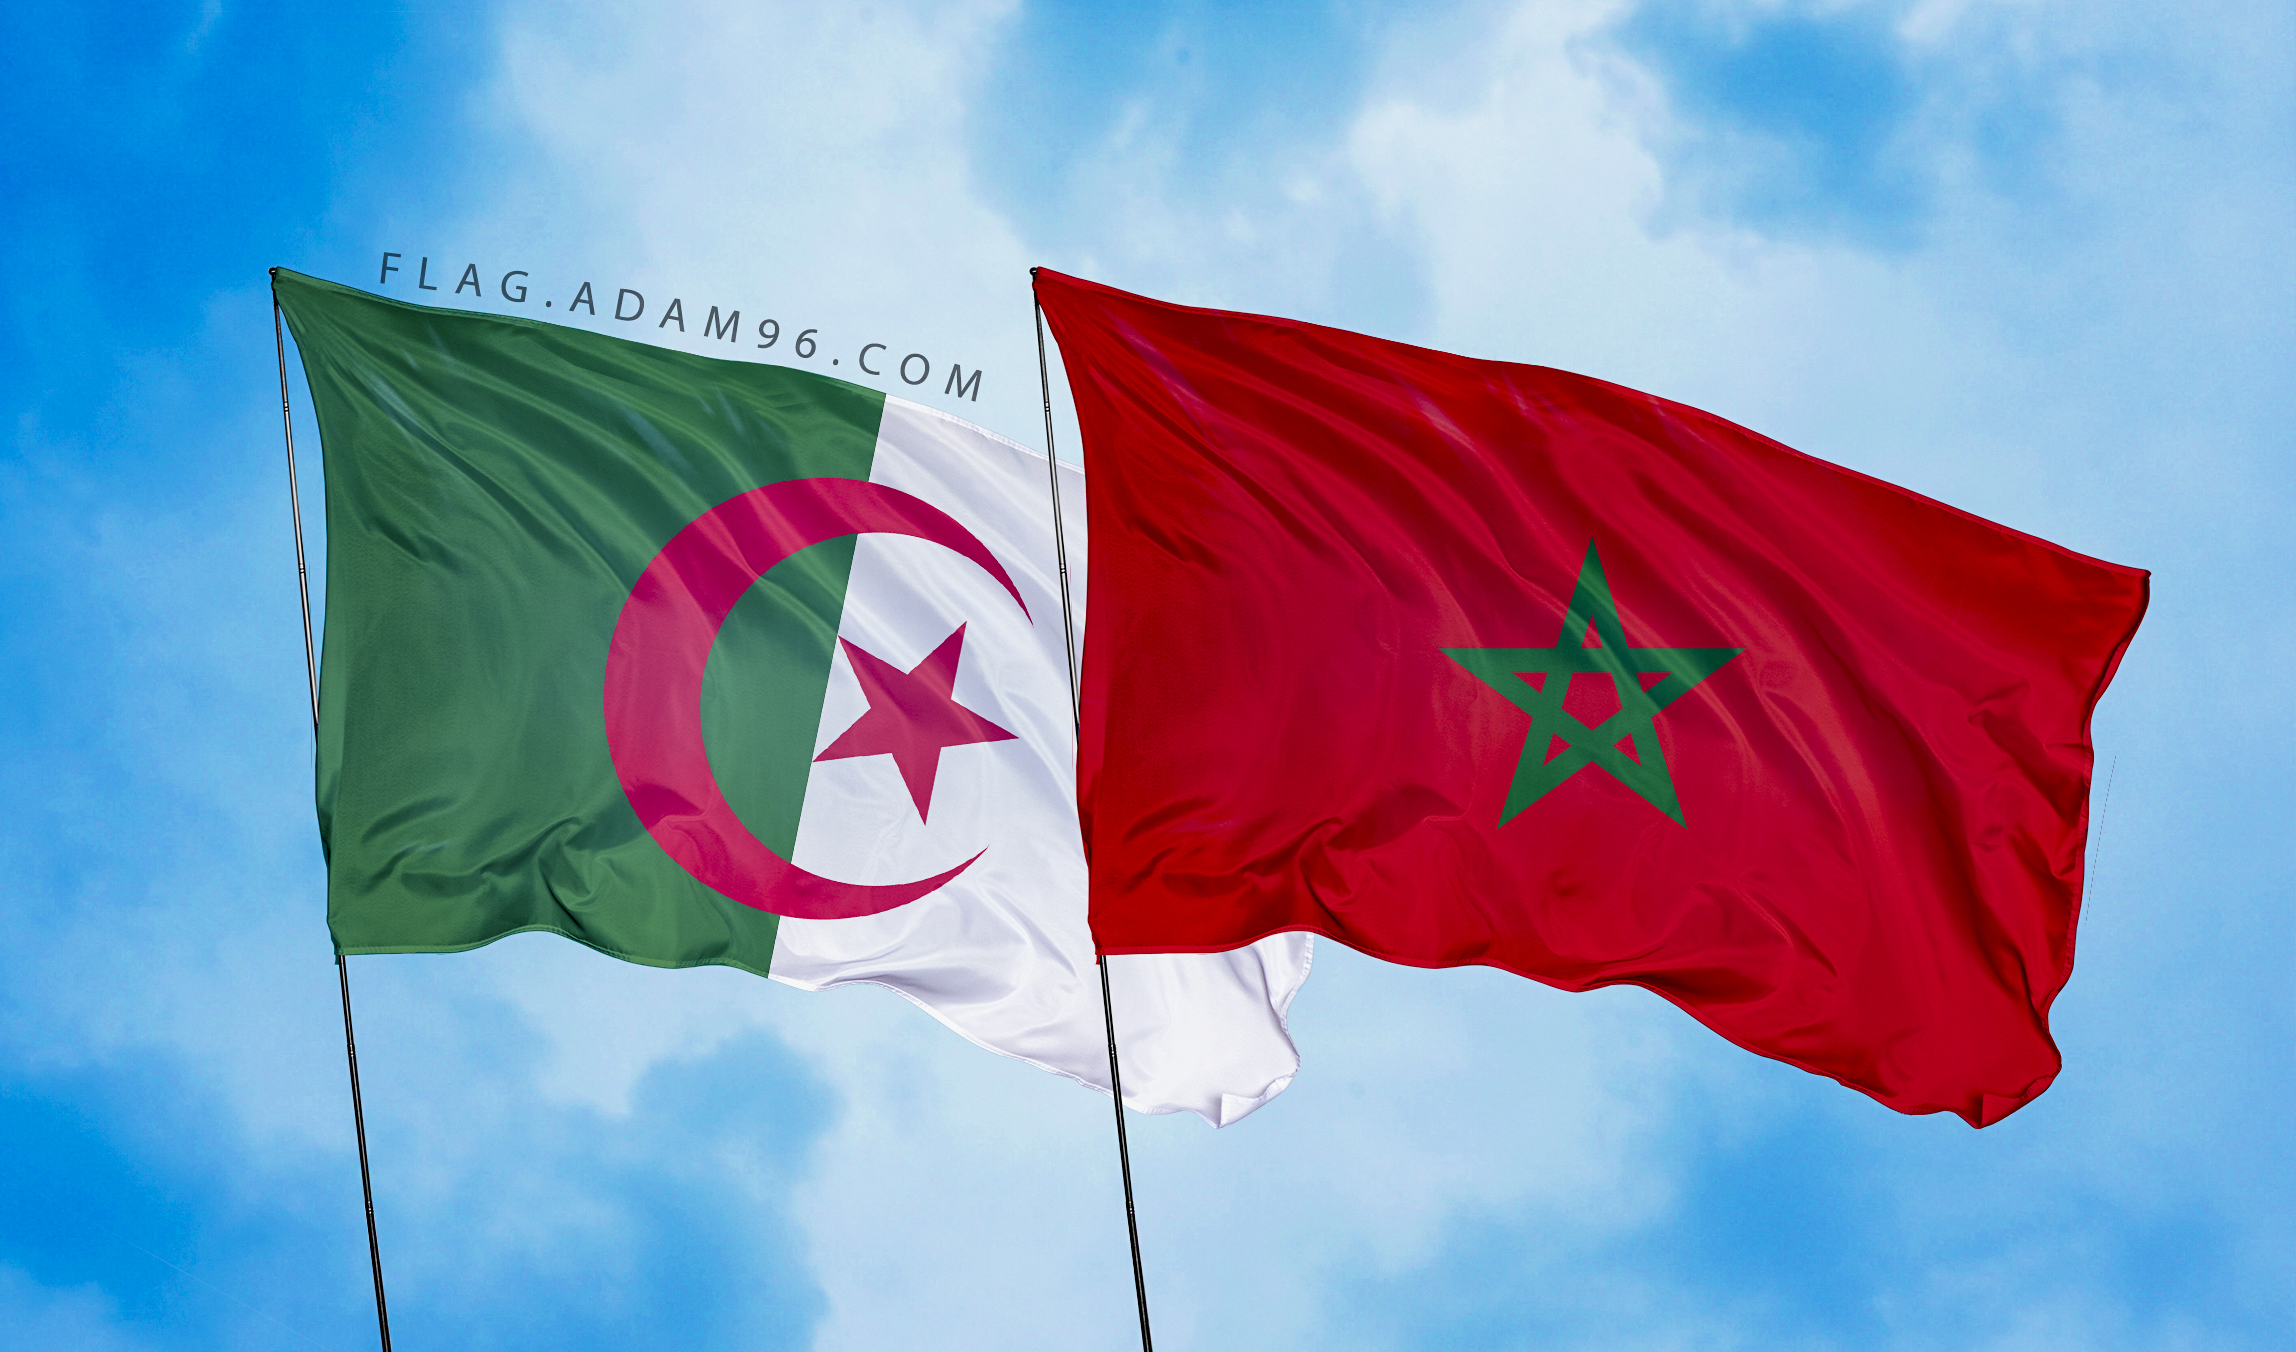 خلفيات اعلام ترفرف في السماء علم المغرب والجزائر في السماء Morocco and Algeria